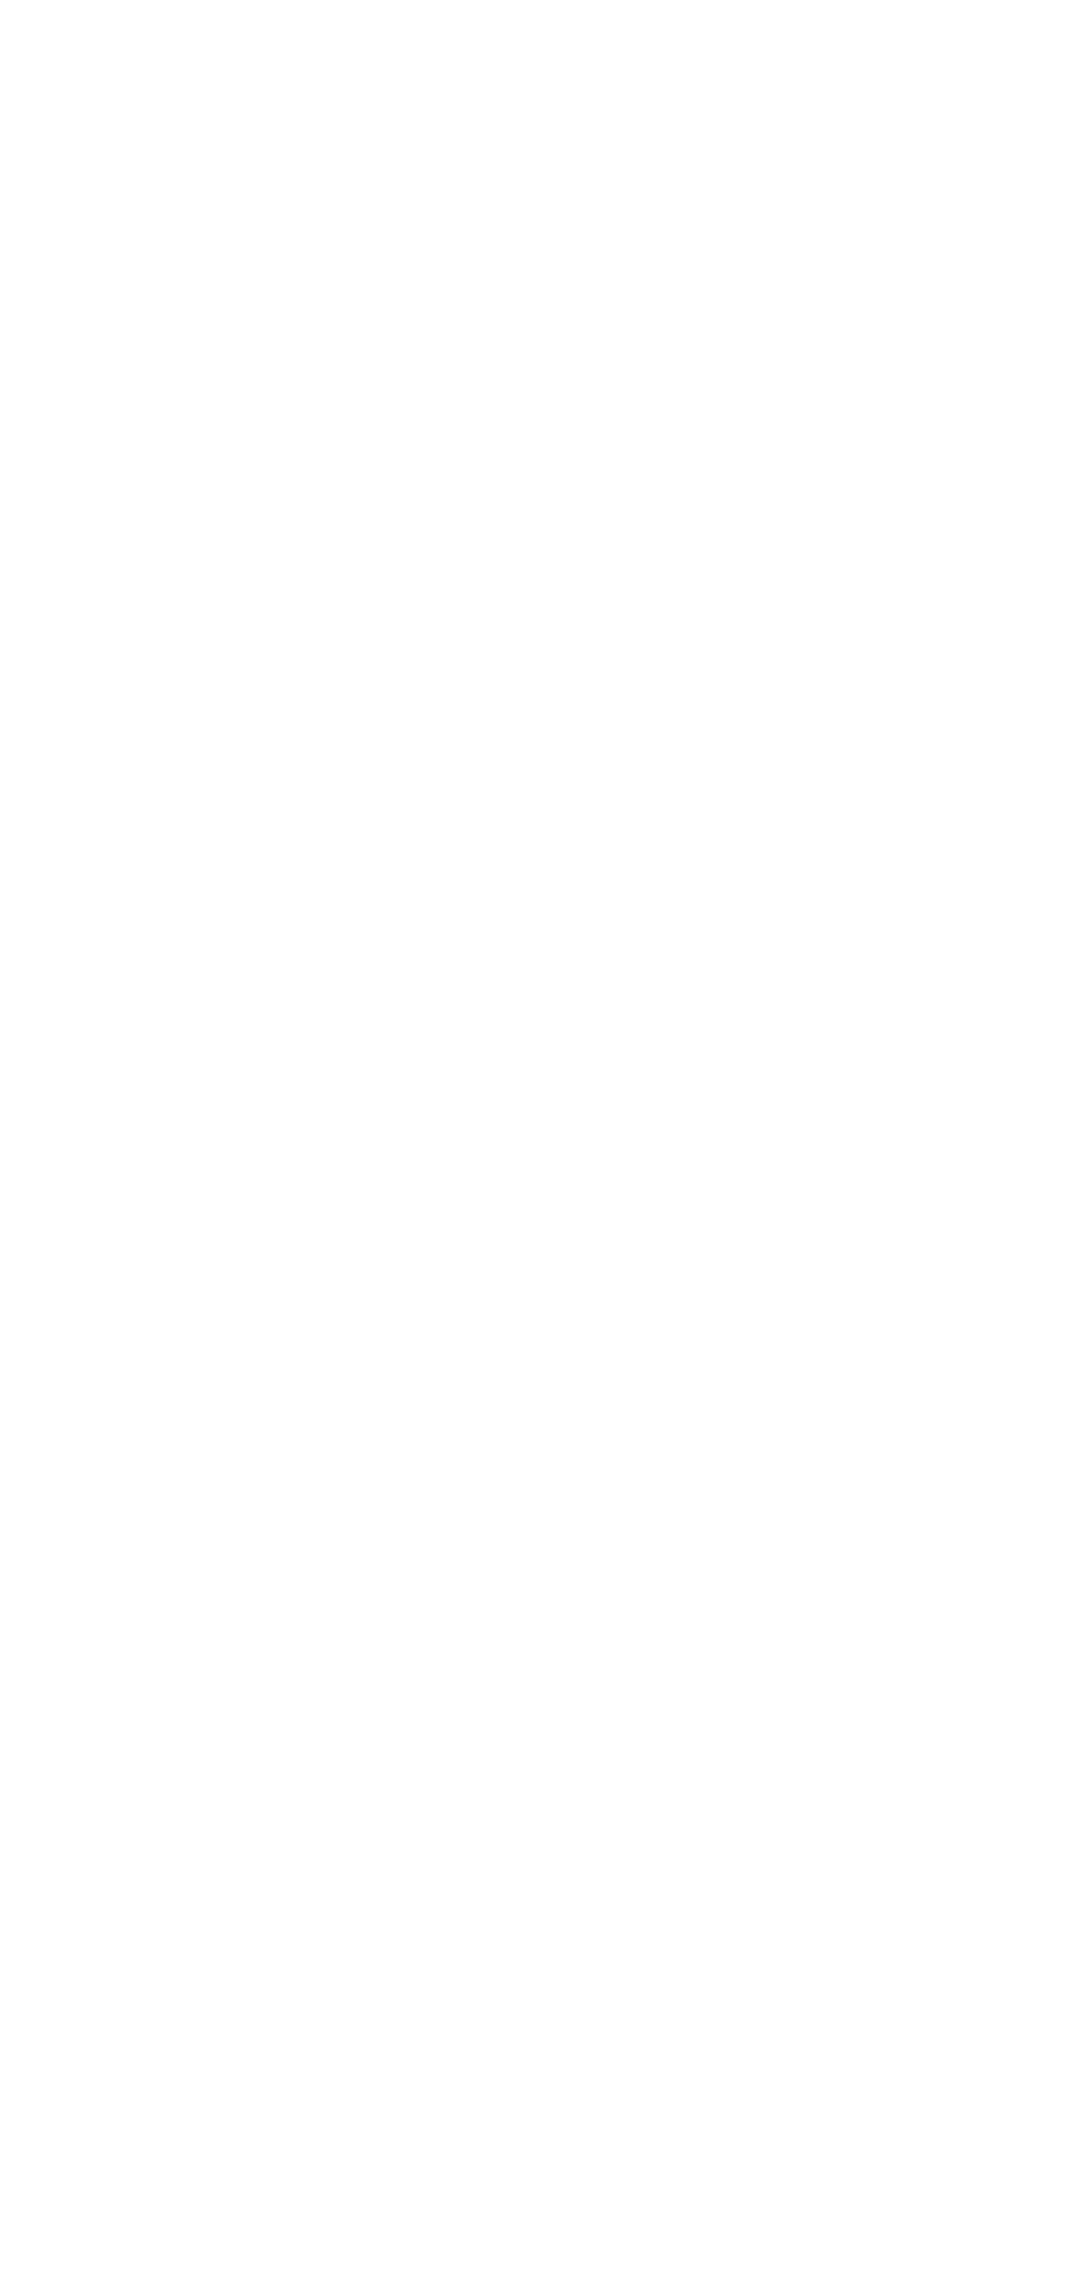 Si nos mester menciona dos top fashion trends pa e periodo aki, nos lo bisa: saya maxi (hasta te na vloer) y cargo pa...